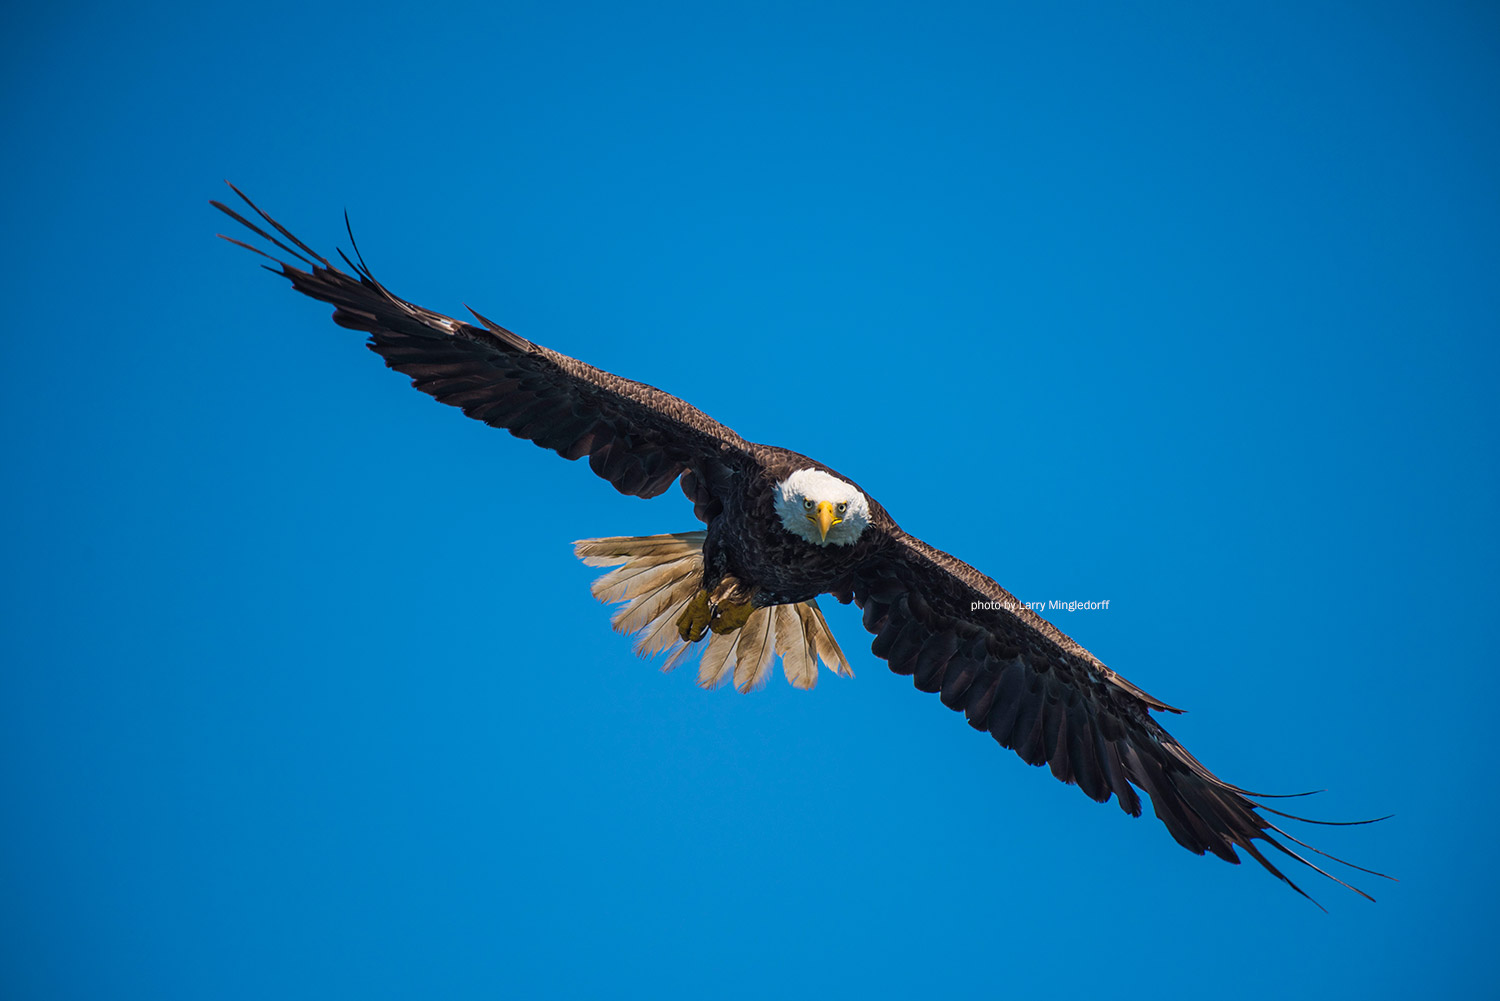 Eagle in flight by Larry Mingledorff